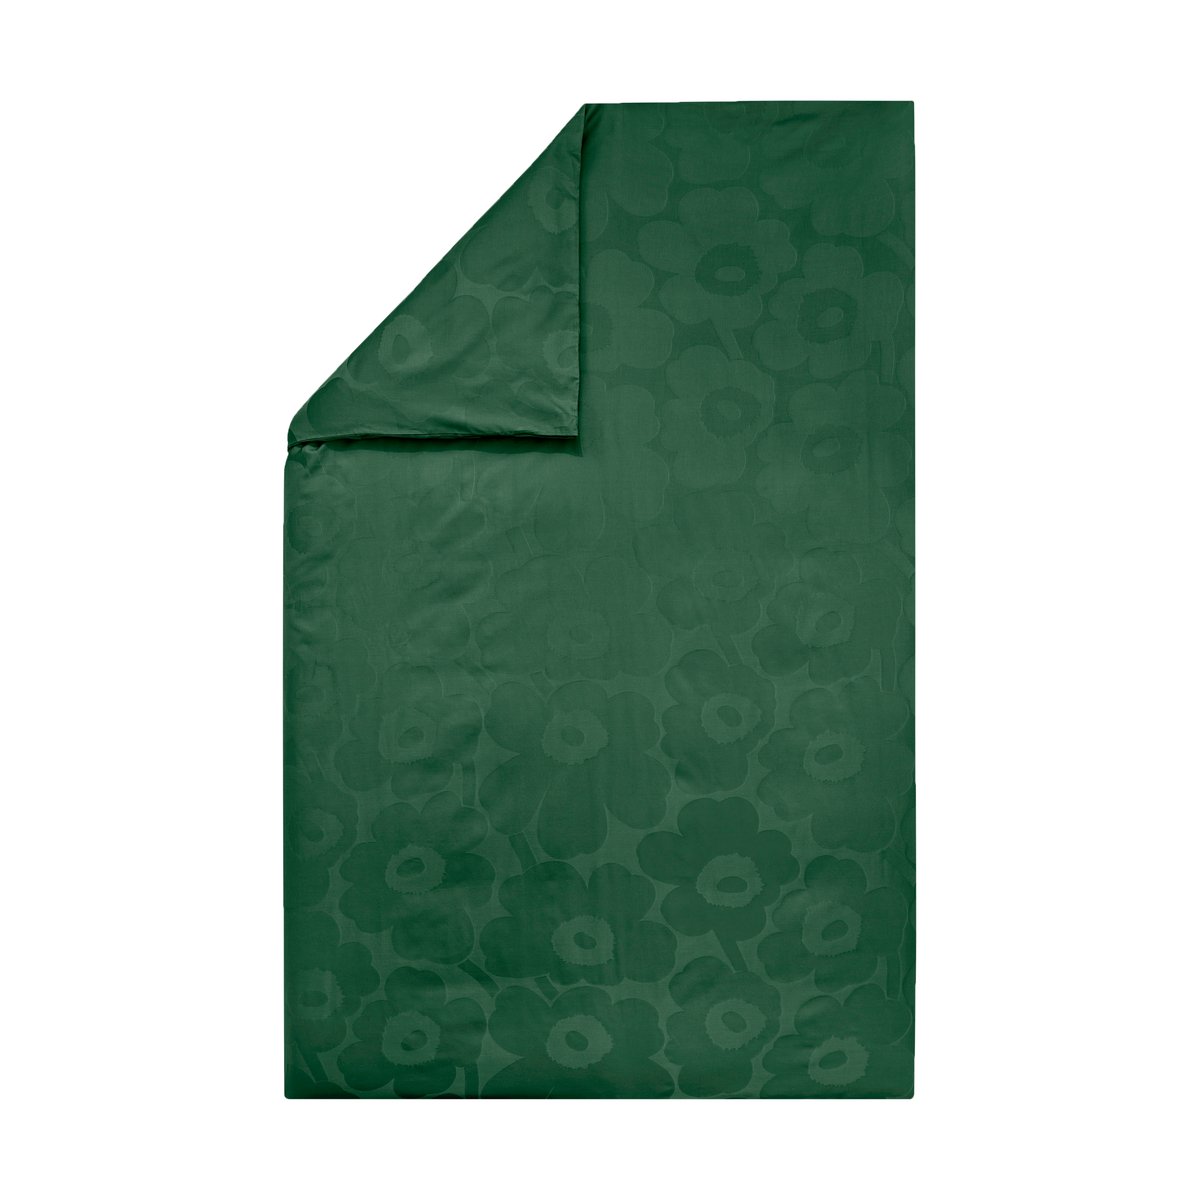 Marimekko Unikko pussilakana 150×210 cm Dark green-green